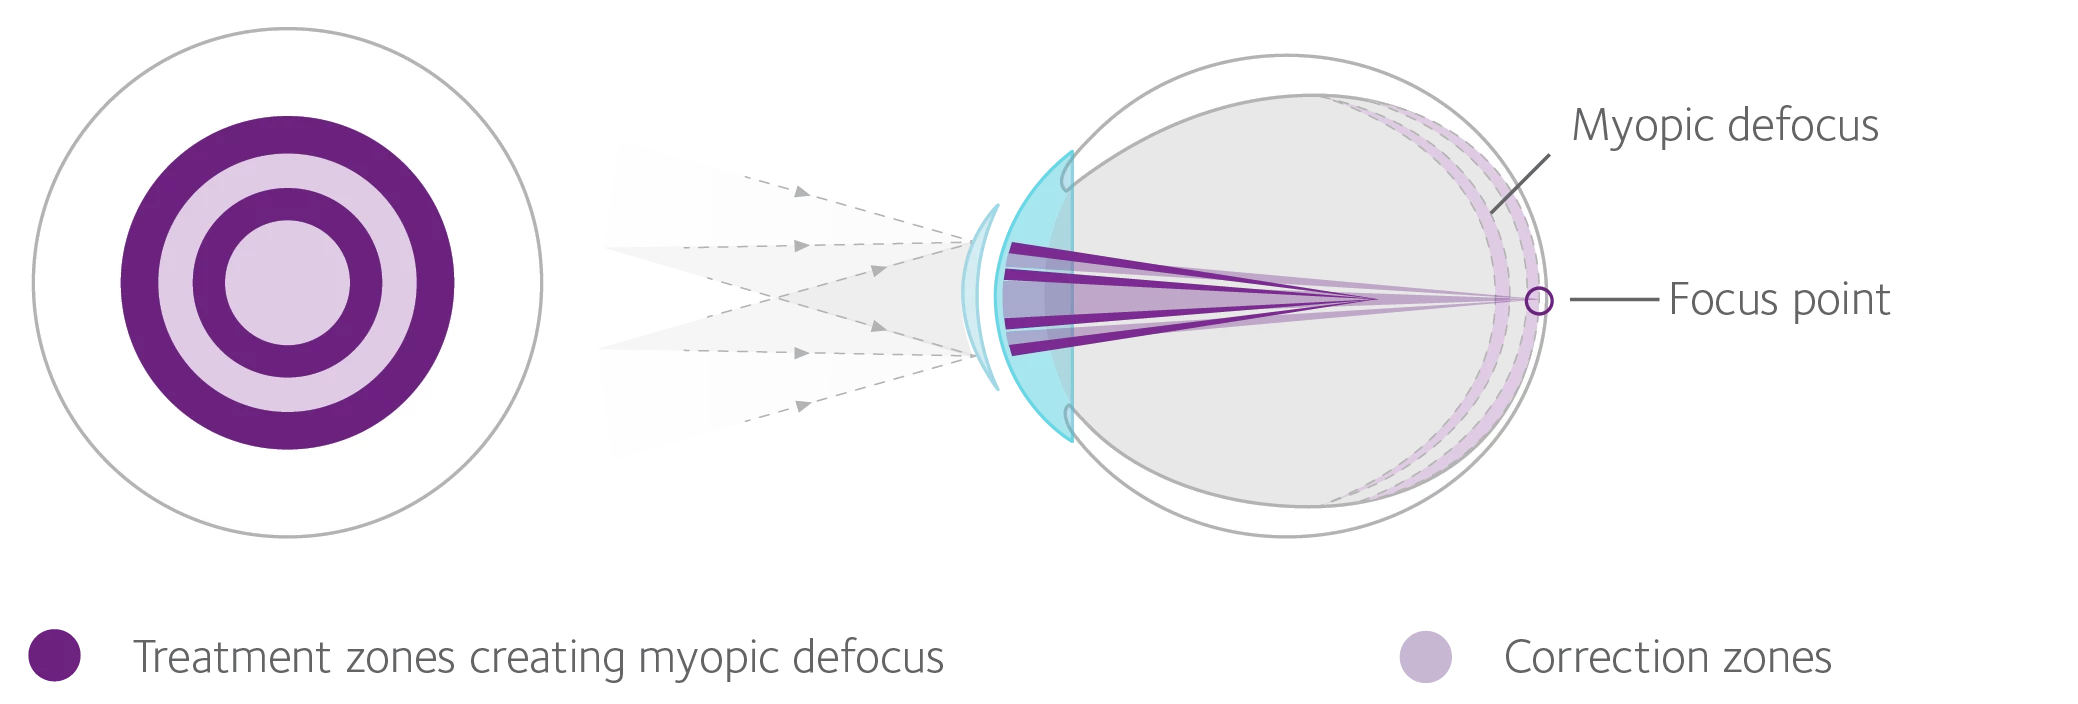 How lenses work